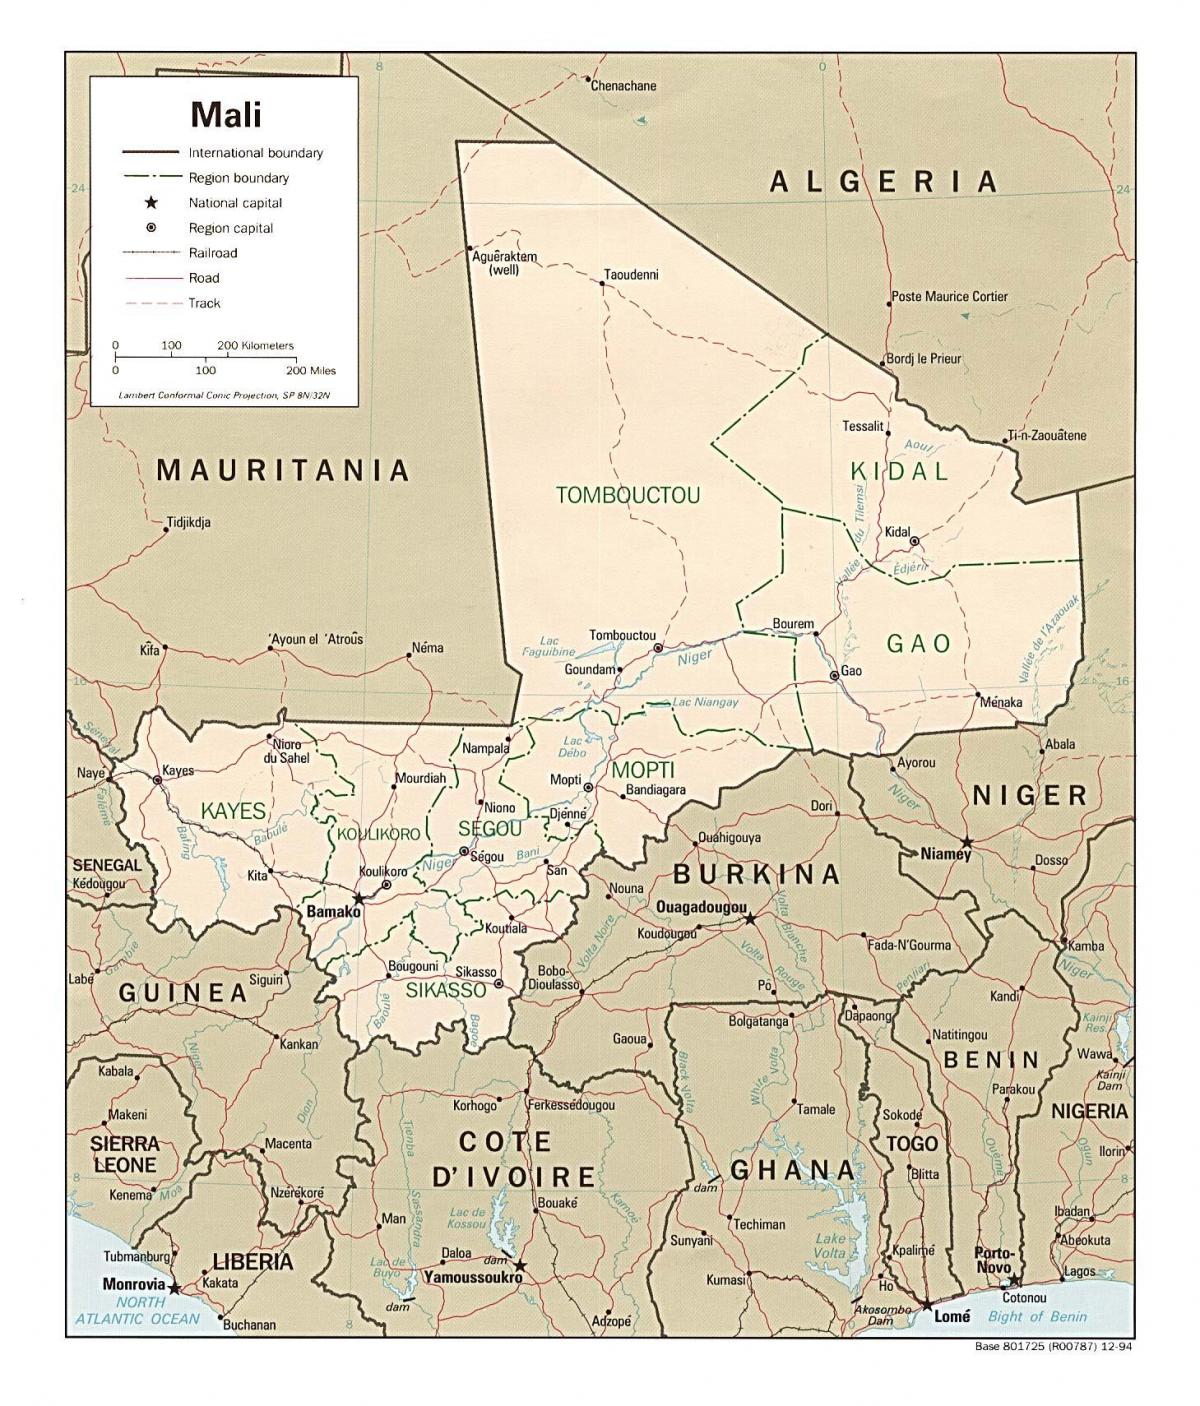 Peta dari Mali negara